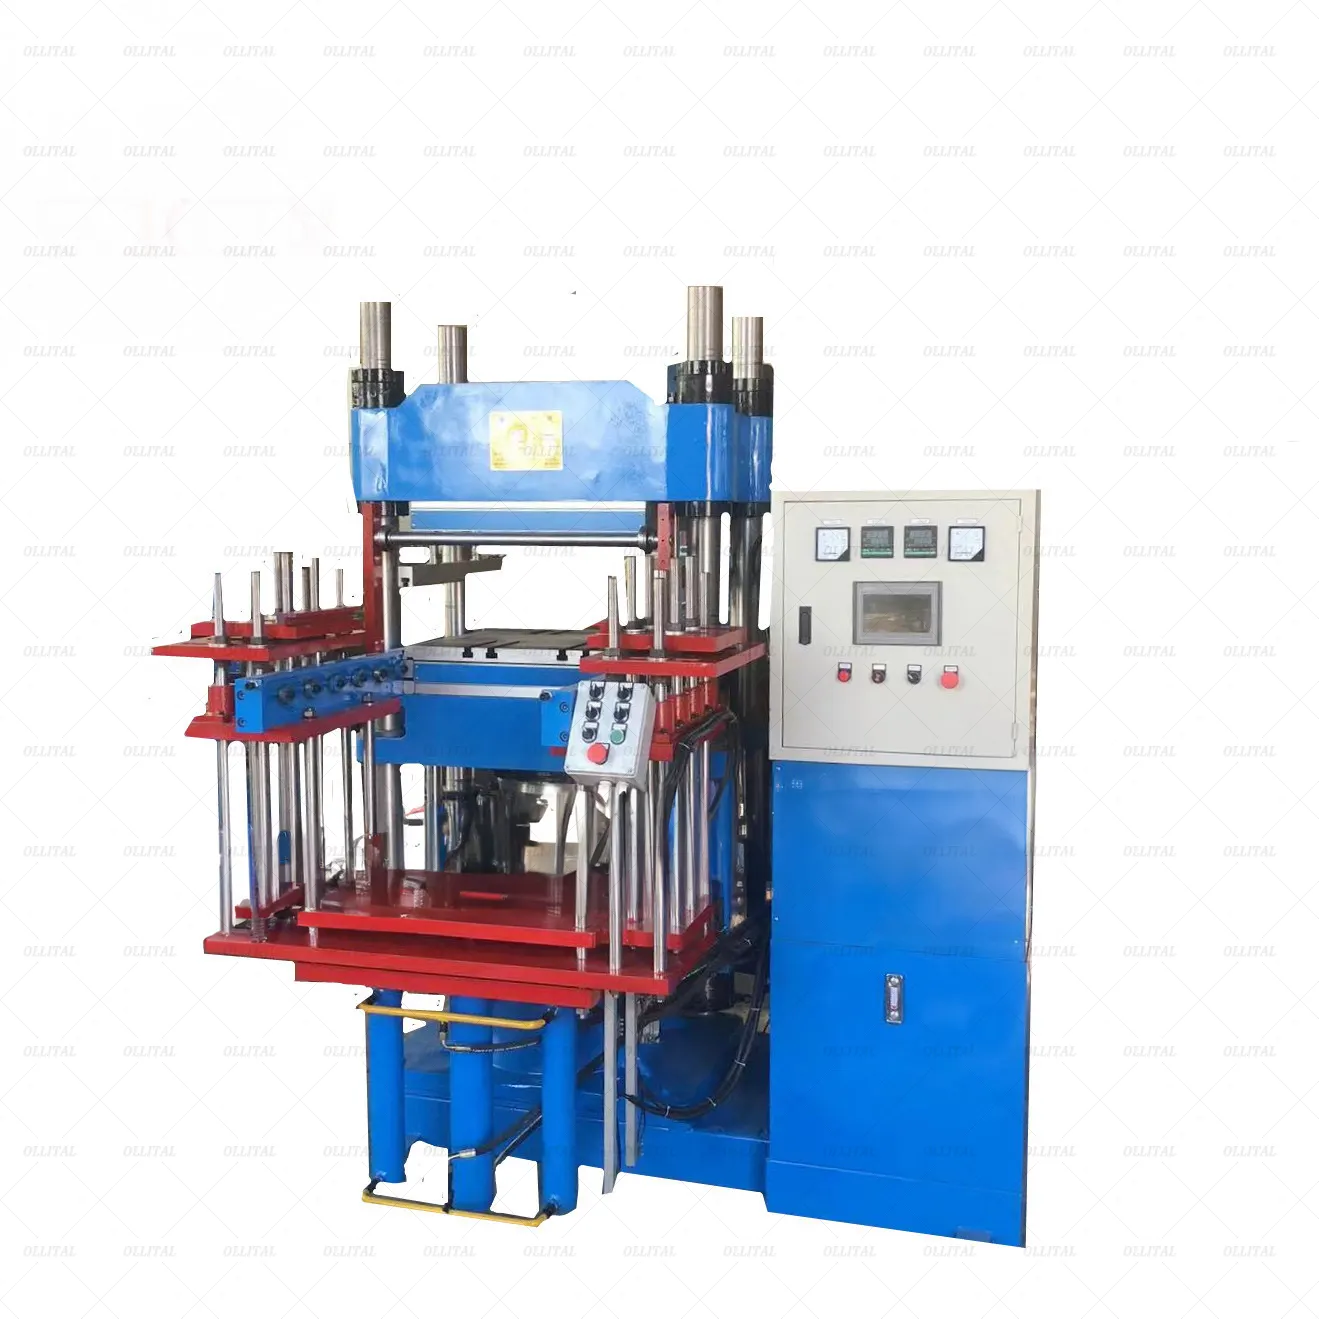 रबर हाइड्रोलिक फ्लैट प्लेट प्रेस वल्केनाइजर रबर टाइल विनिर्माण मशीन के लिए हॉट प्रेस मशीन